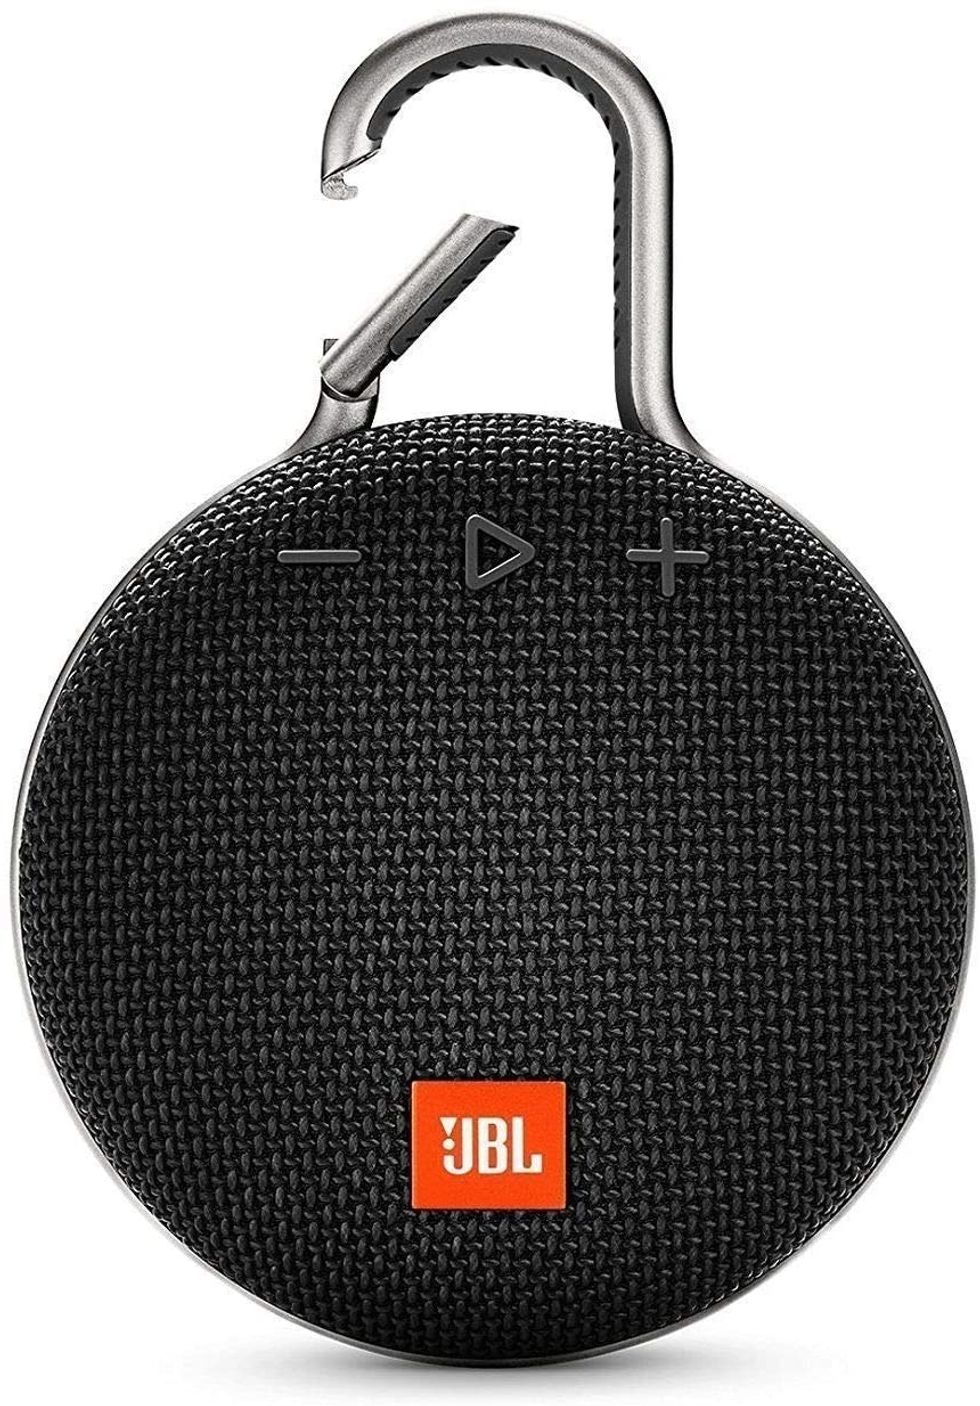 JBL Clip 3 Bluetooth Speaker ($69.95)